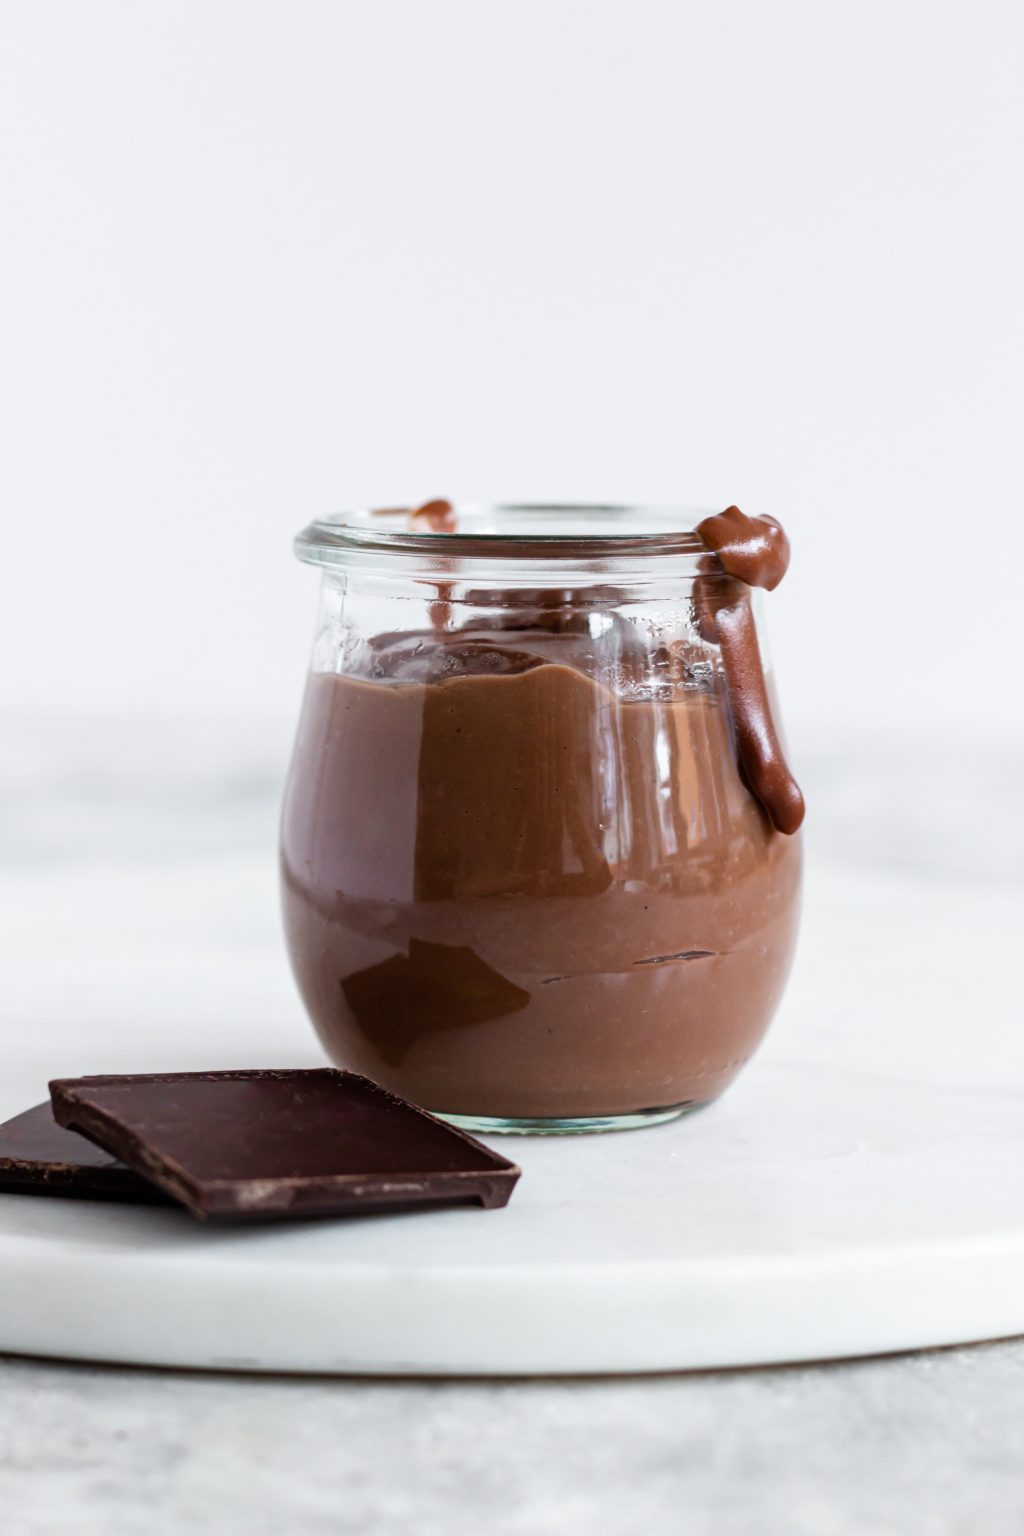 Pouding au chocolat maison - Recette de pouding au chocolat au vrai chocolat |  dame dessert